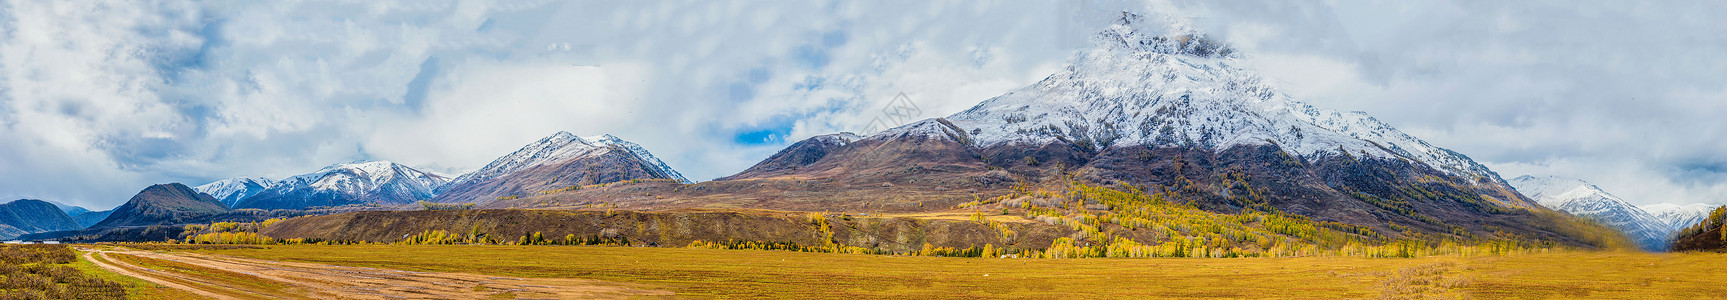 风景雪北疆秋色雪山全景背景